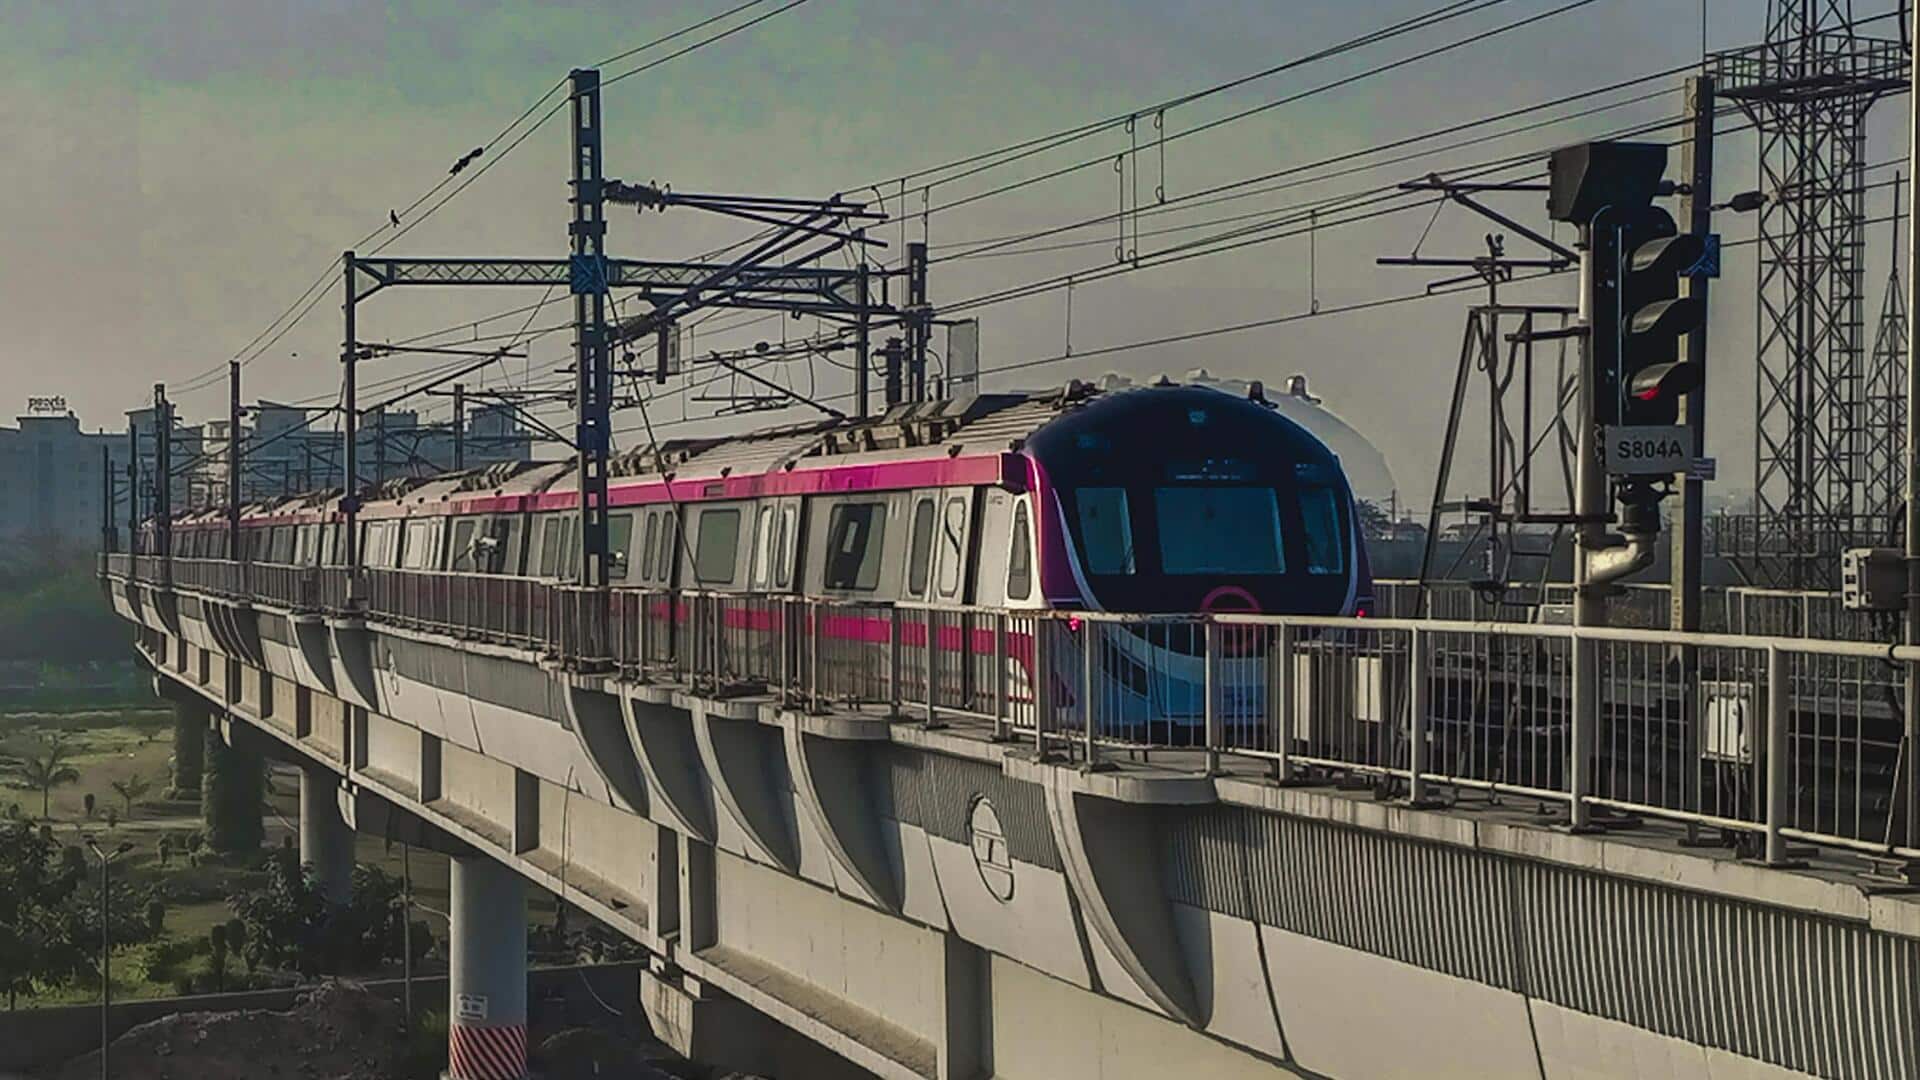 दिल्ली में बनाई जाएंगी मेट्रों की 2 नई लाइनें, केंद्रीय मंत्रिमंडल ने मंजूरी दी